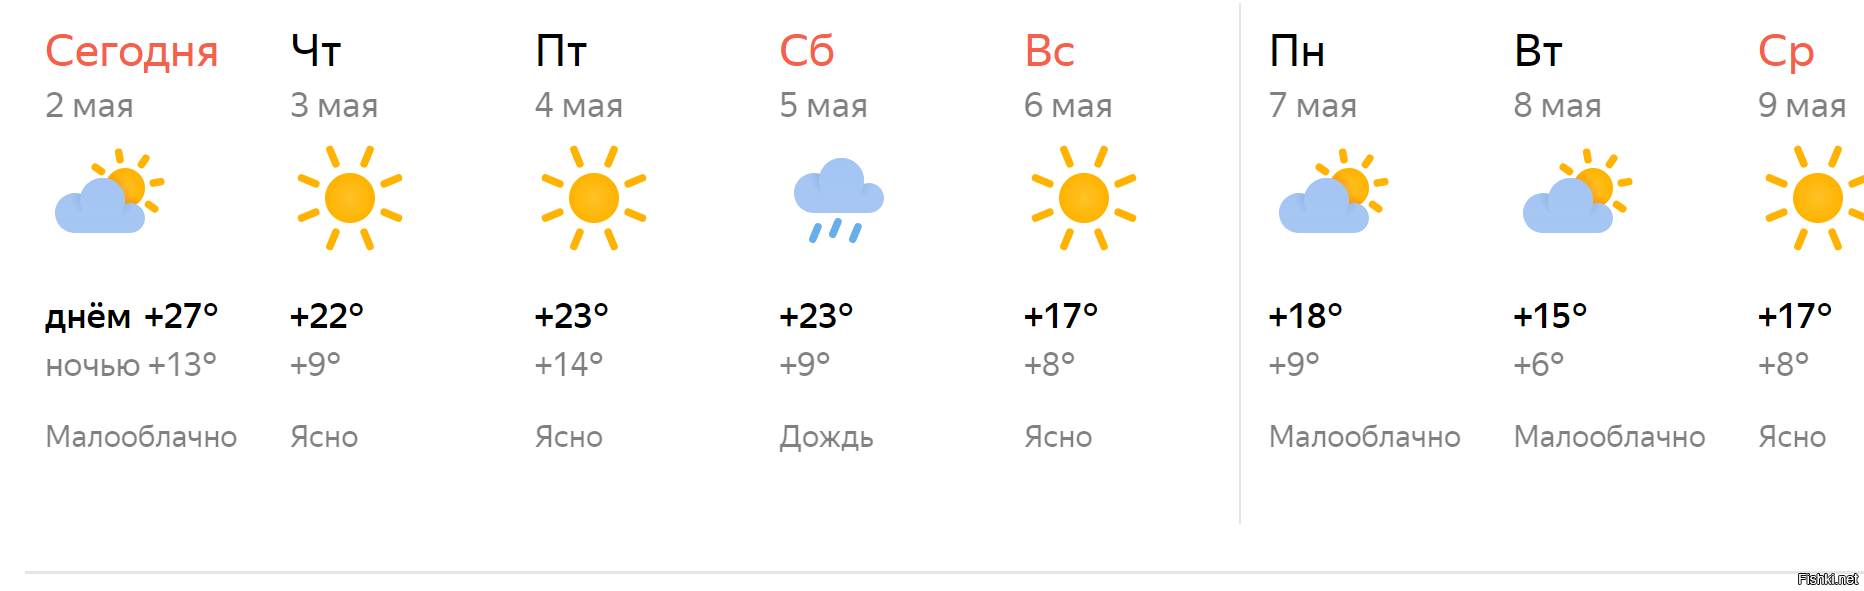 Прогноз погоды рп5 тольятти. Погода в Липецке. Прогноз погоды в Липецке на неделю. Погода в Липецке на неделю точный прогноз.